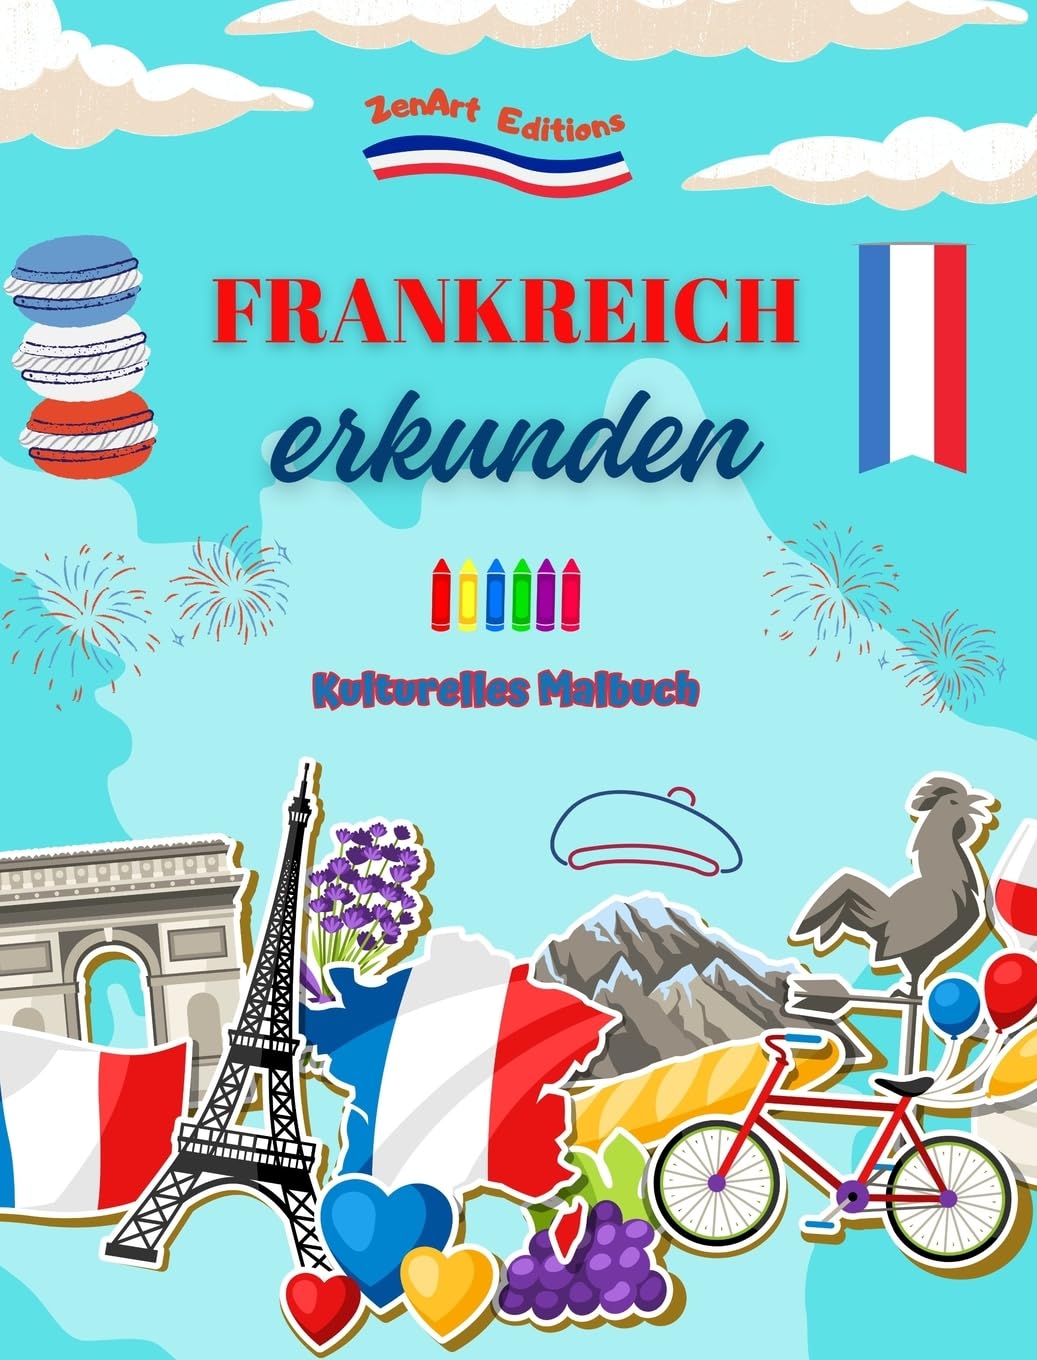 Frankreich erkunden - Kulturelles Malbuch - Kreative Gestaltung französischer Symbole: Ikonen der französischen Kultur vereinen sich in einem erstaunlichen Malbuch